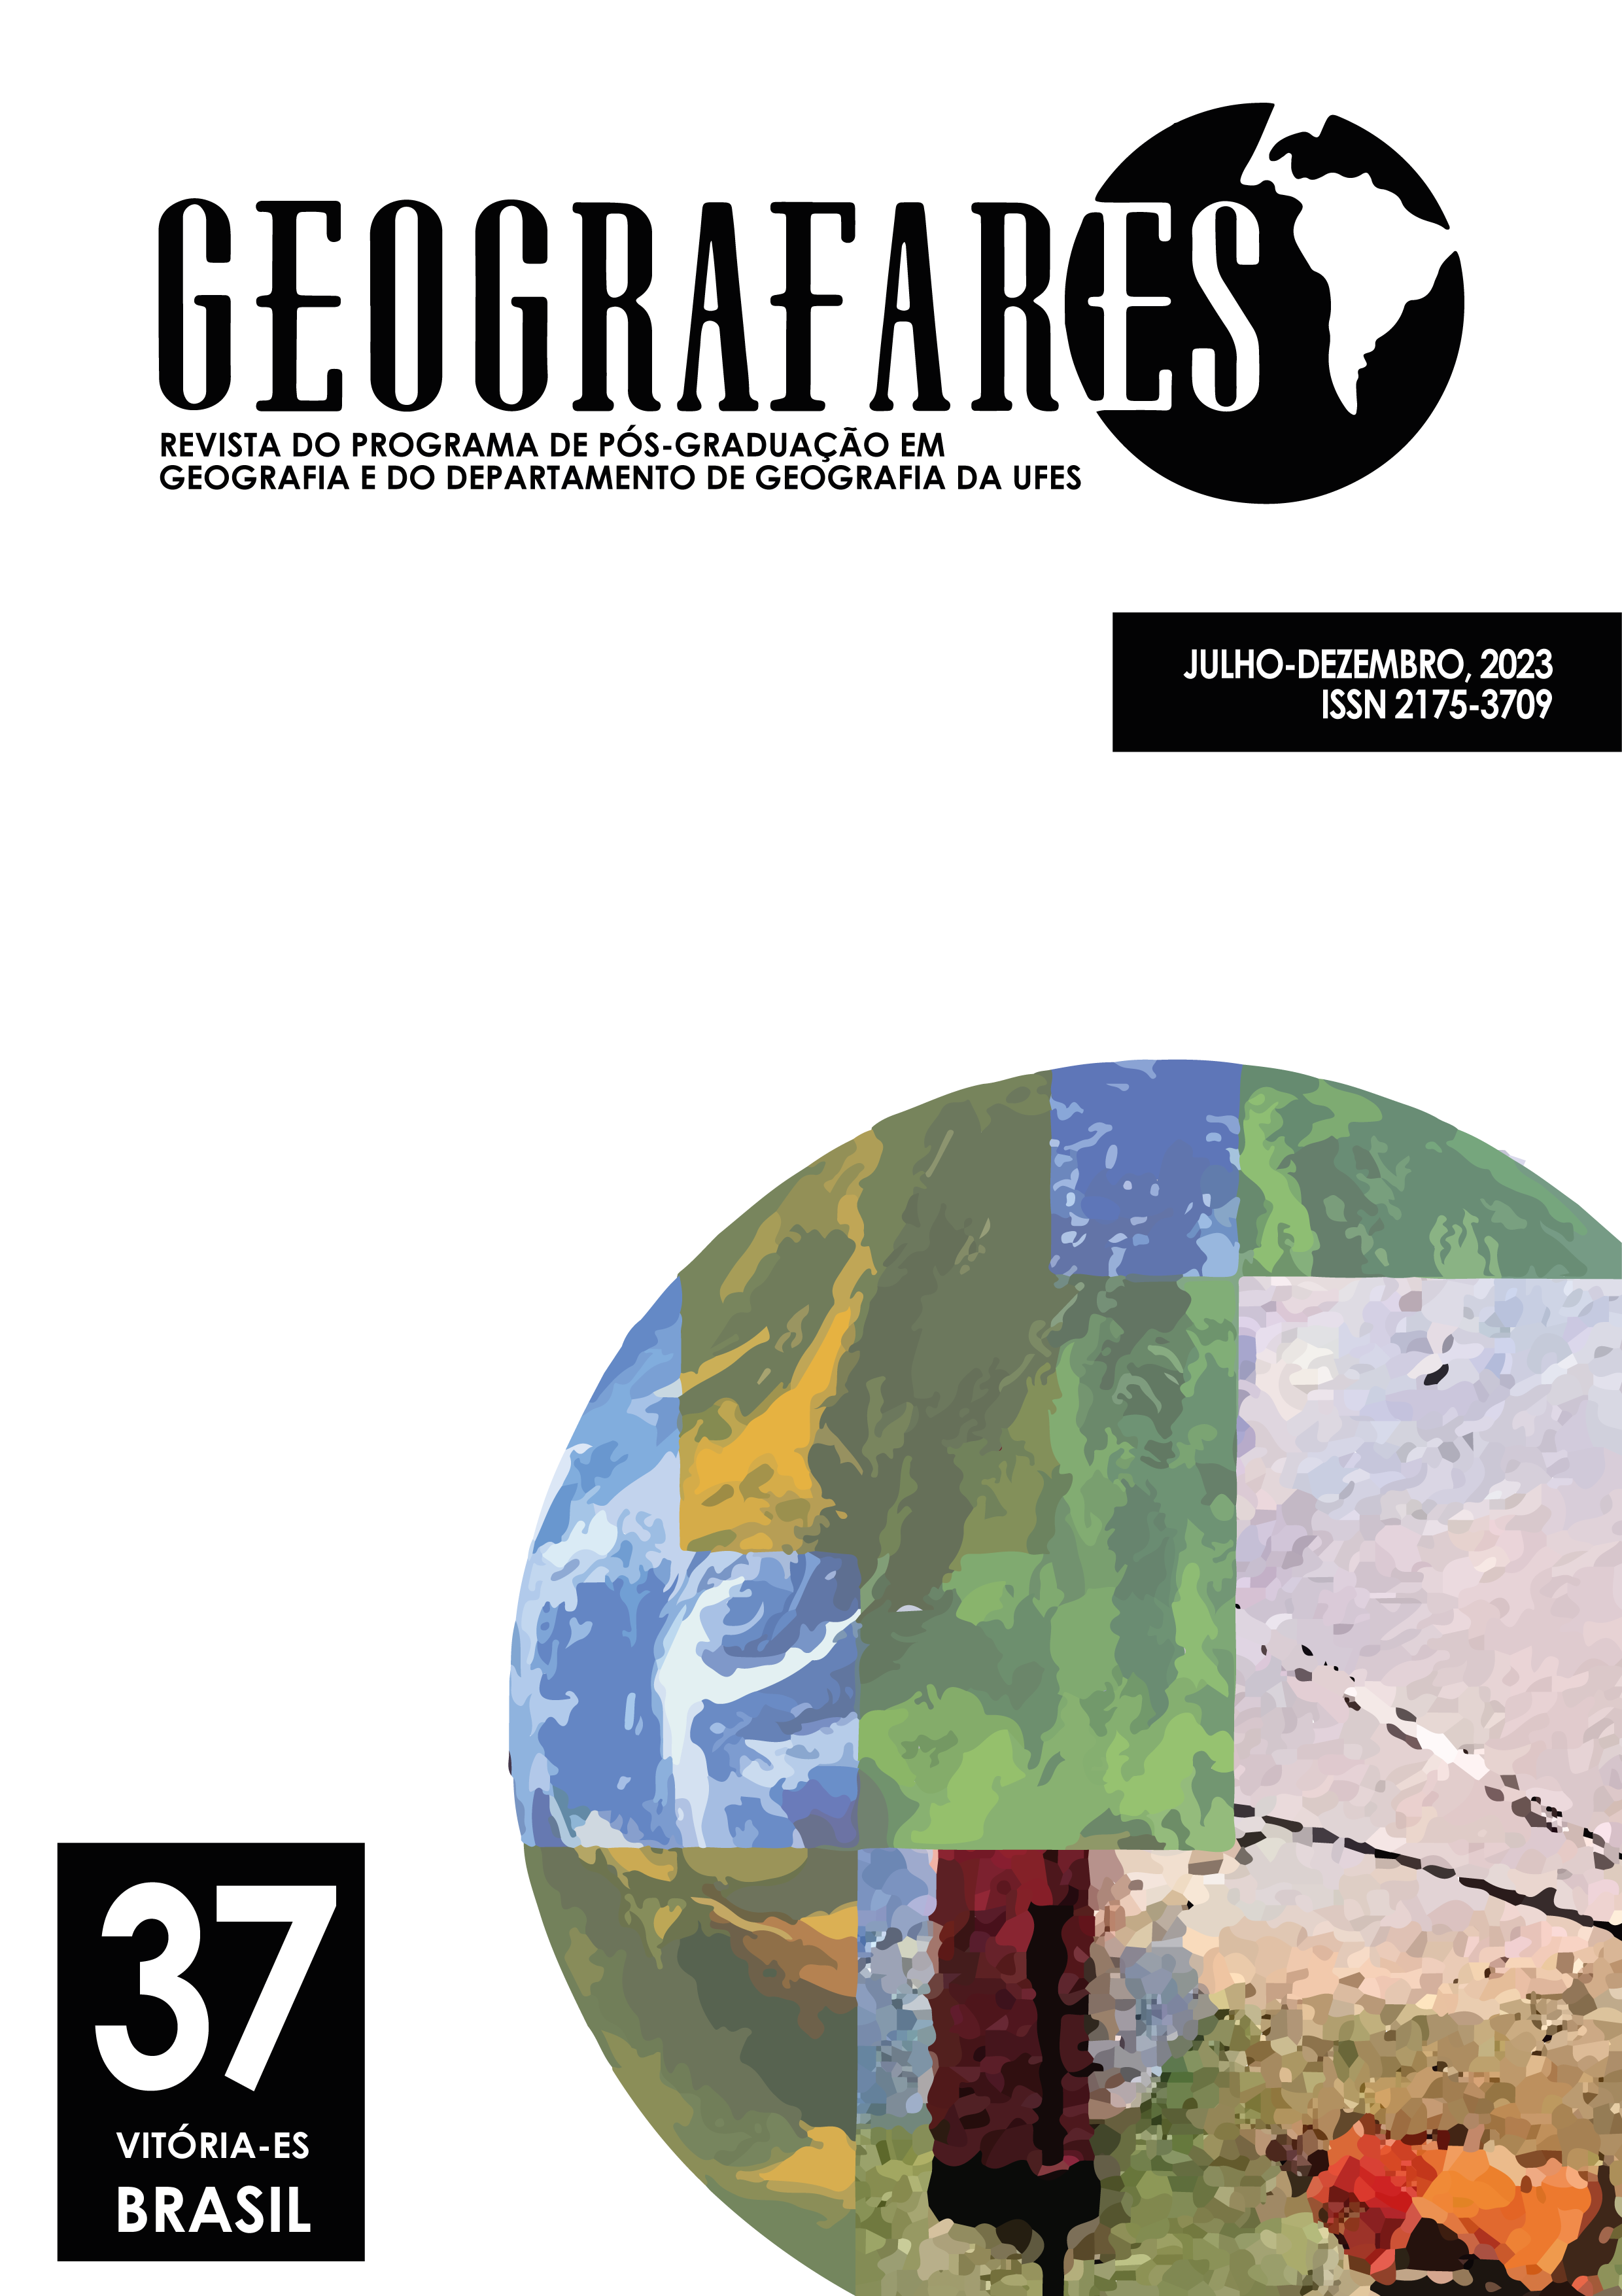 					Visualizar v. 3 n. 37 (2023): Revista Geografares
				